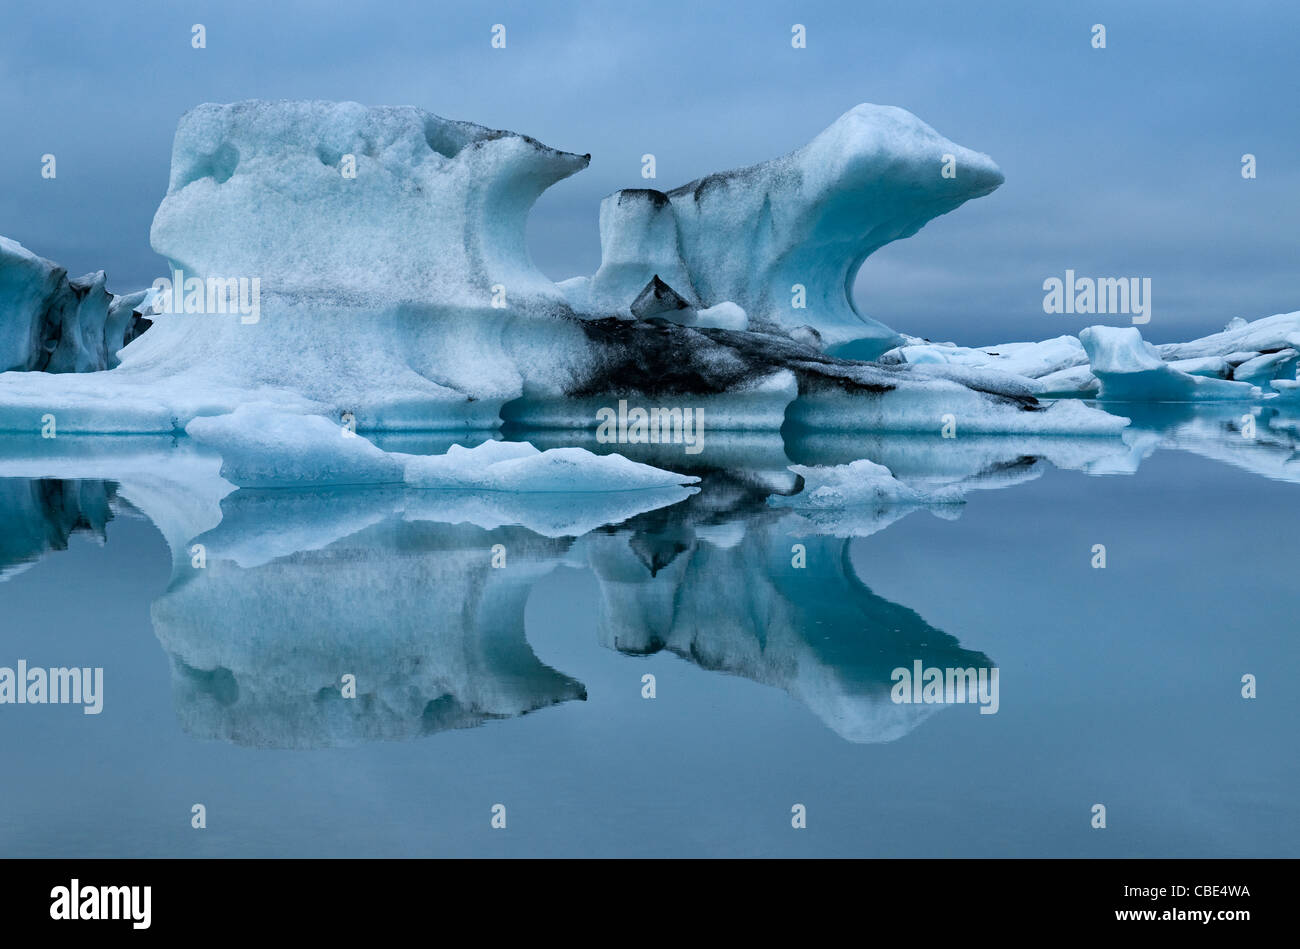 La réflexion d'Iceberg. Jökulsarlon, Islande. Banque D'Images